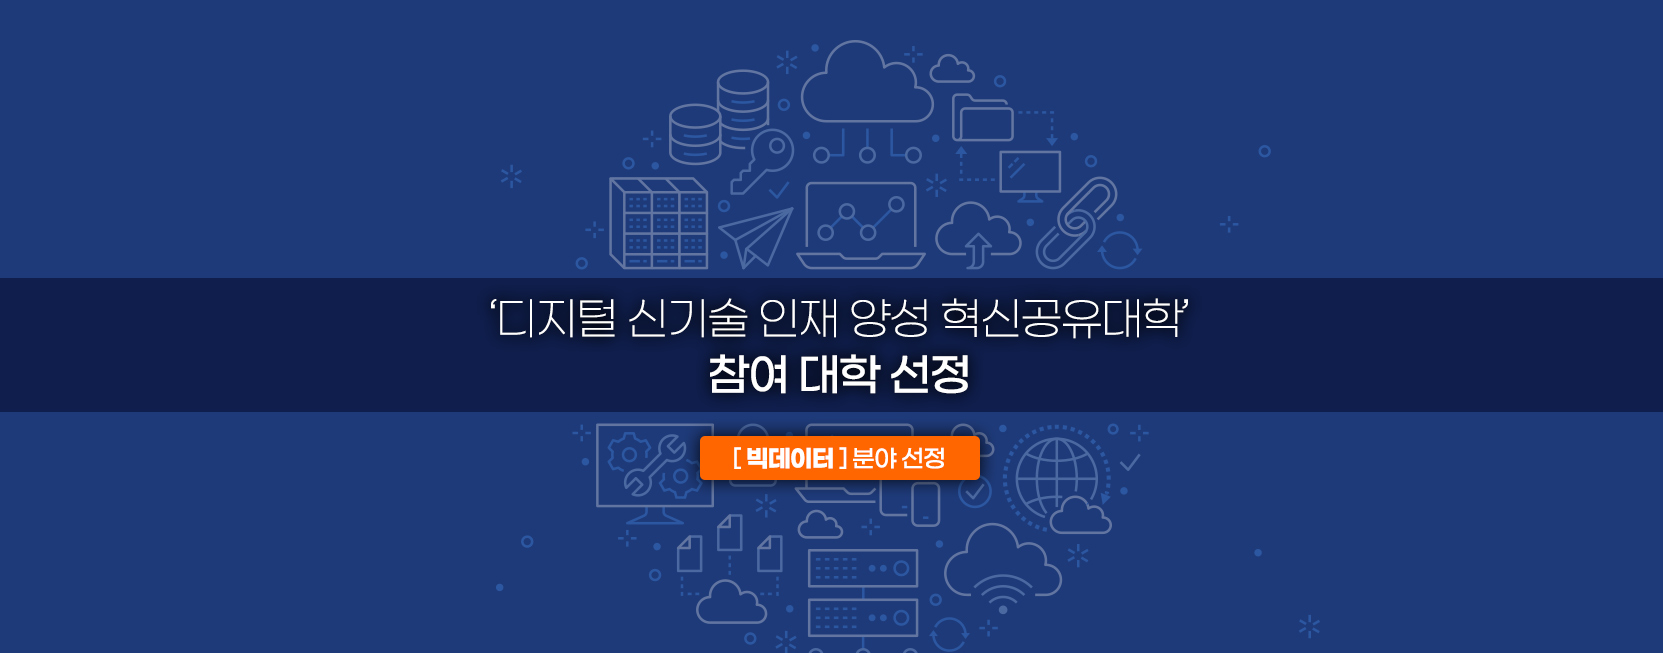 ‘디지털 신기술 인재 양성 혁신공유대학’ 참여 대학 선정
빅데이터 분야 선정